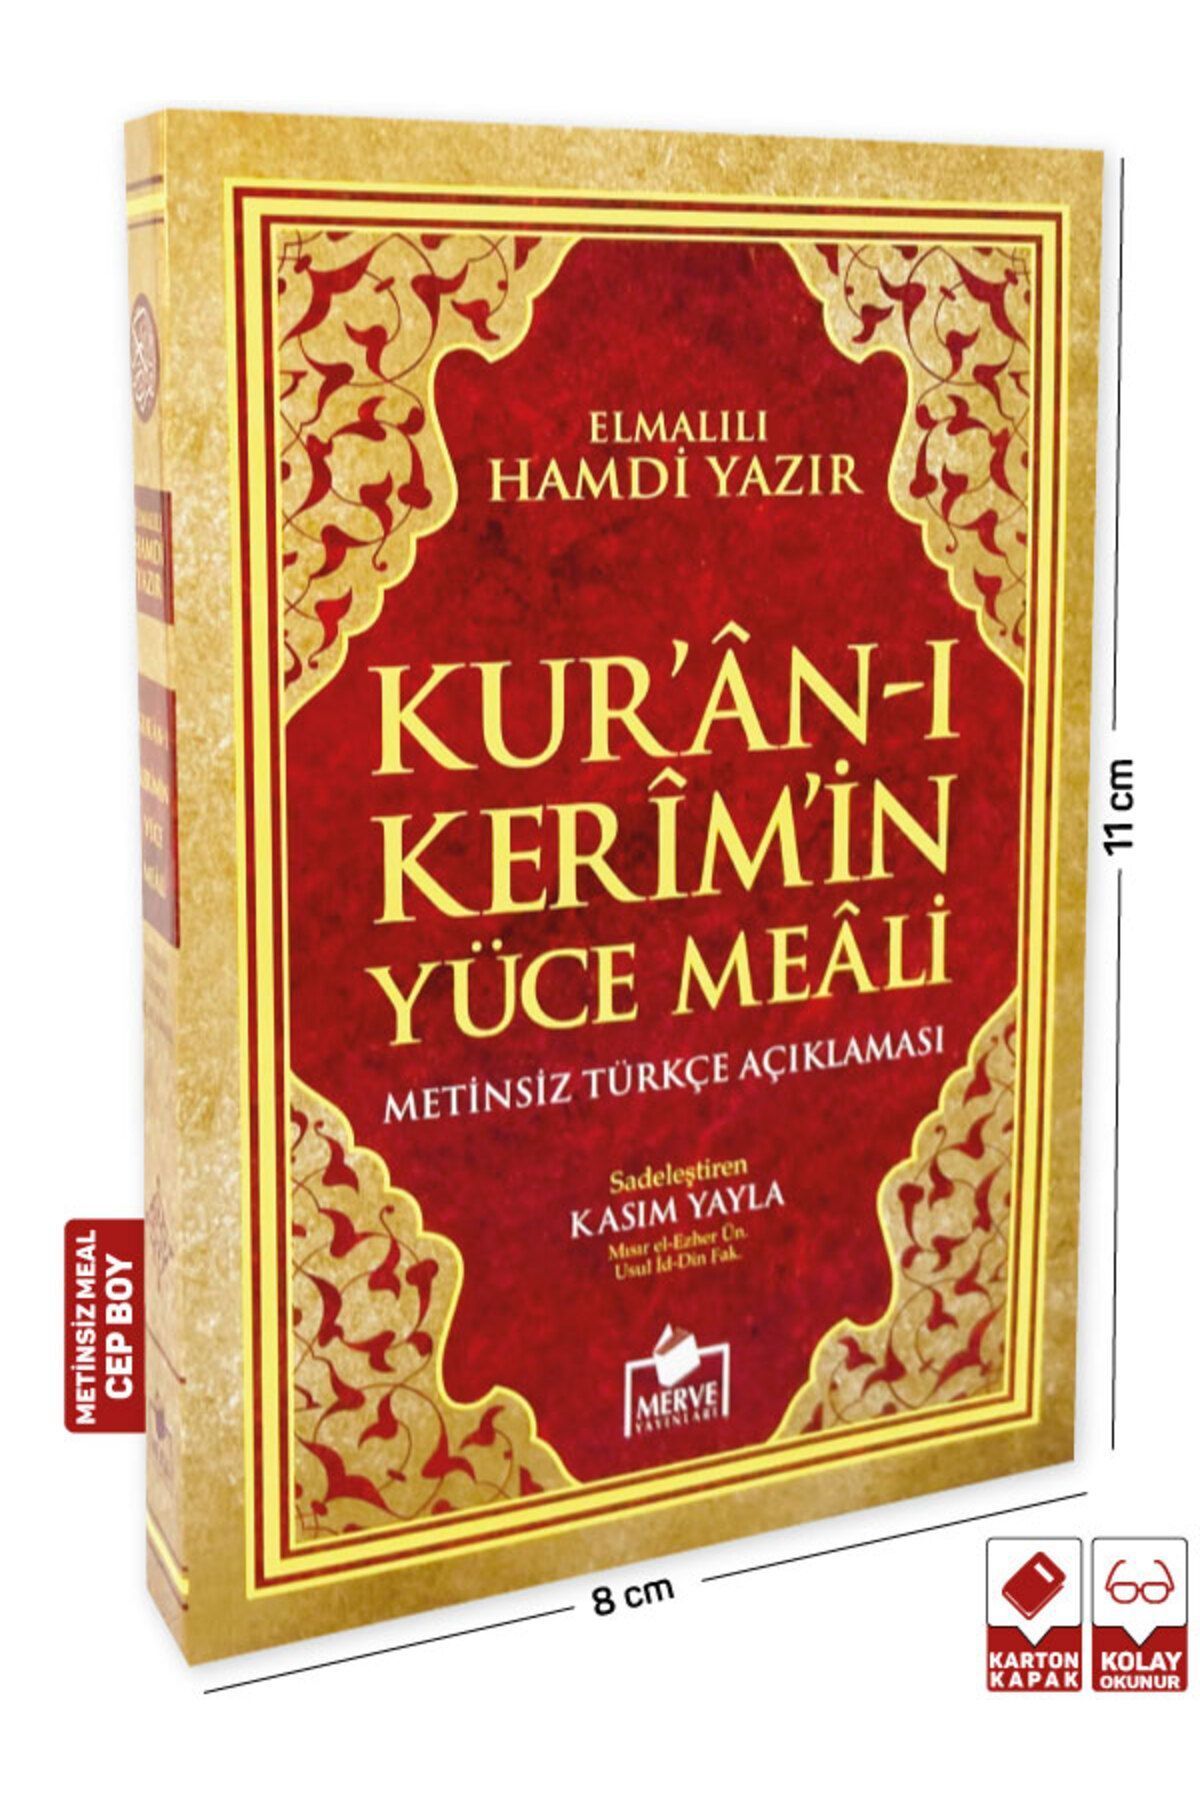 Merve Yayınları Kuran-ı Kerim Yüce Meali Türkçe Açıklaması Metinsiz (CEP BOY) (MEAL010)